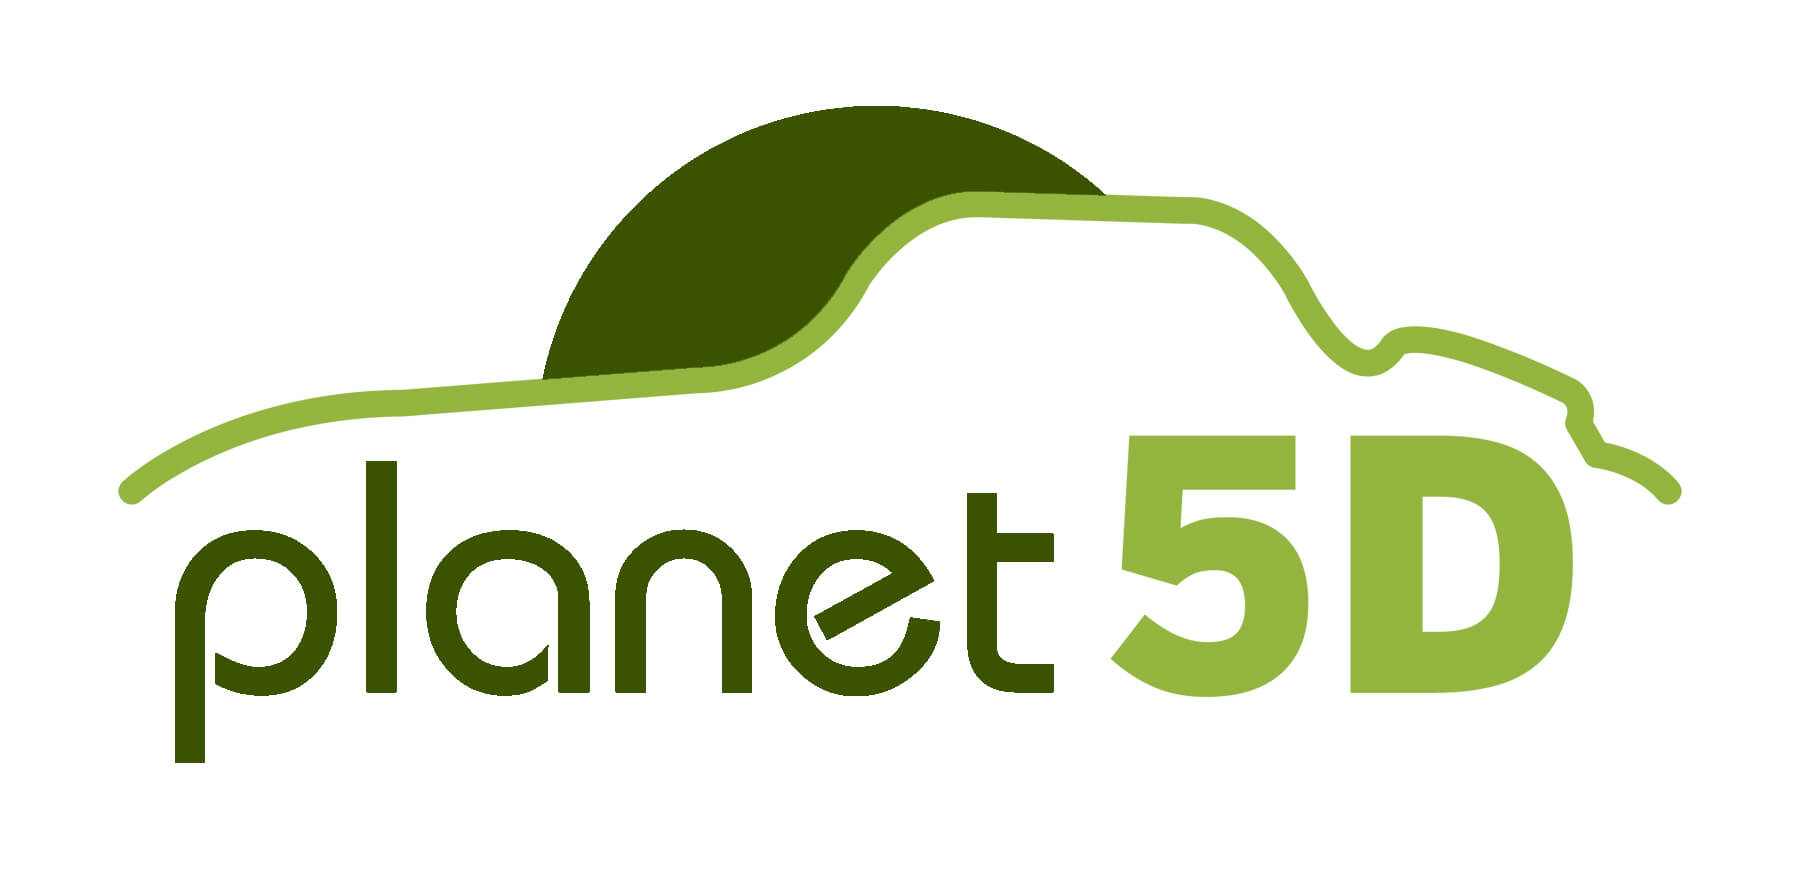 Planet5D